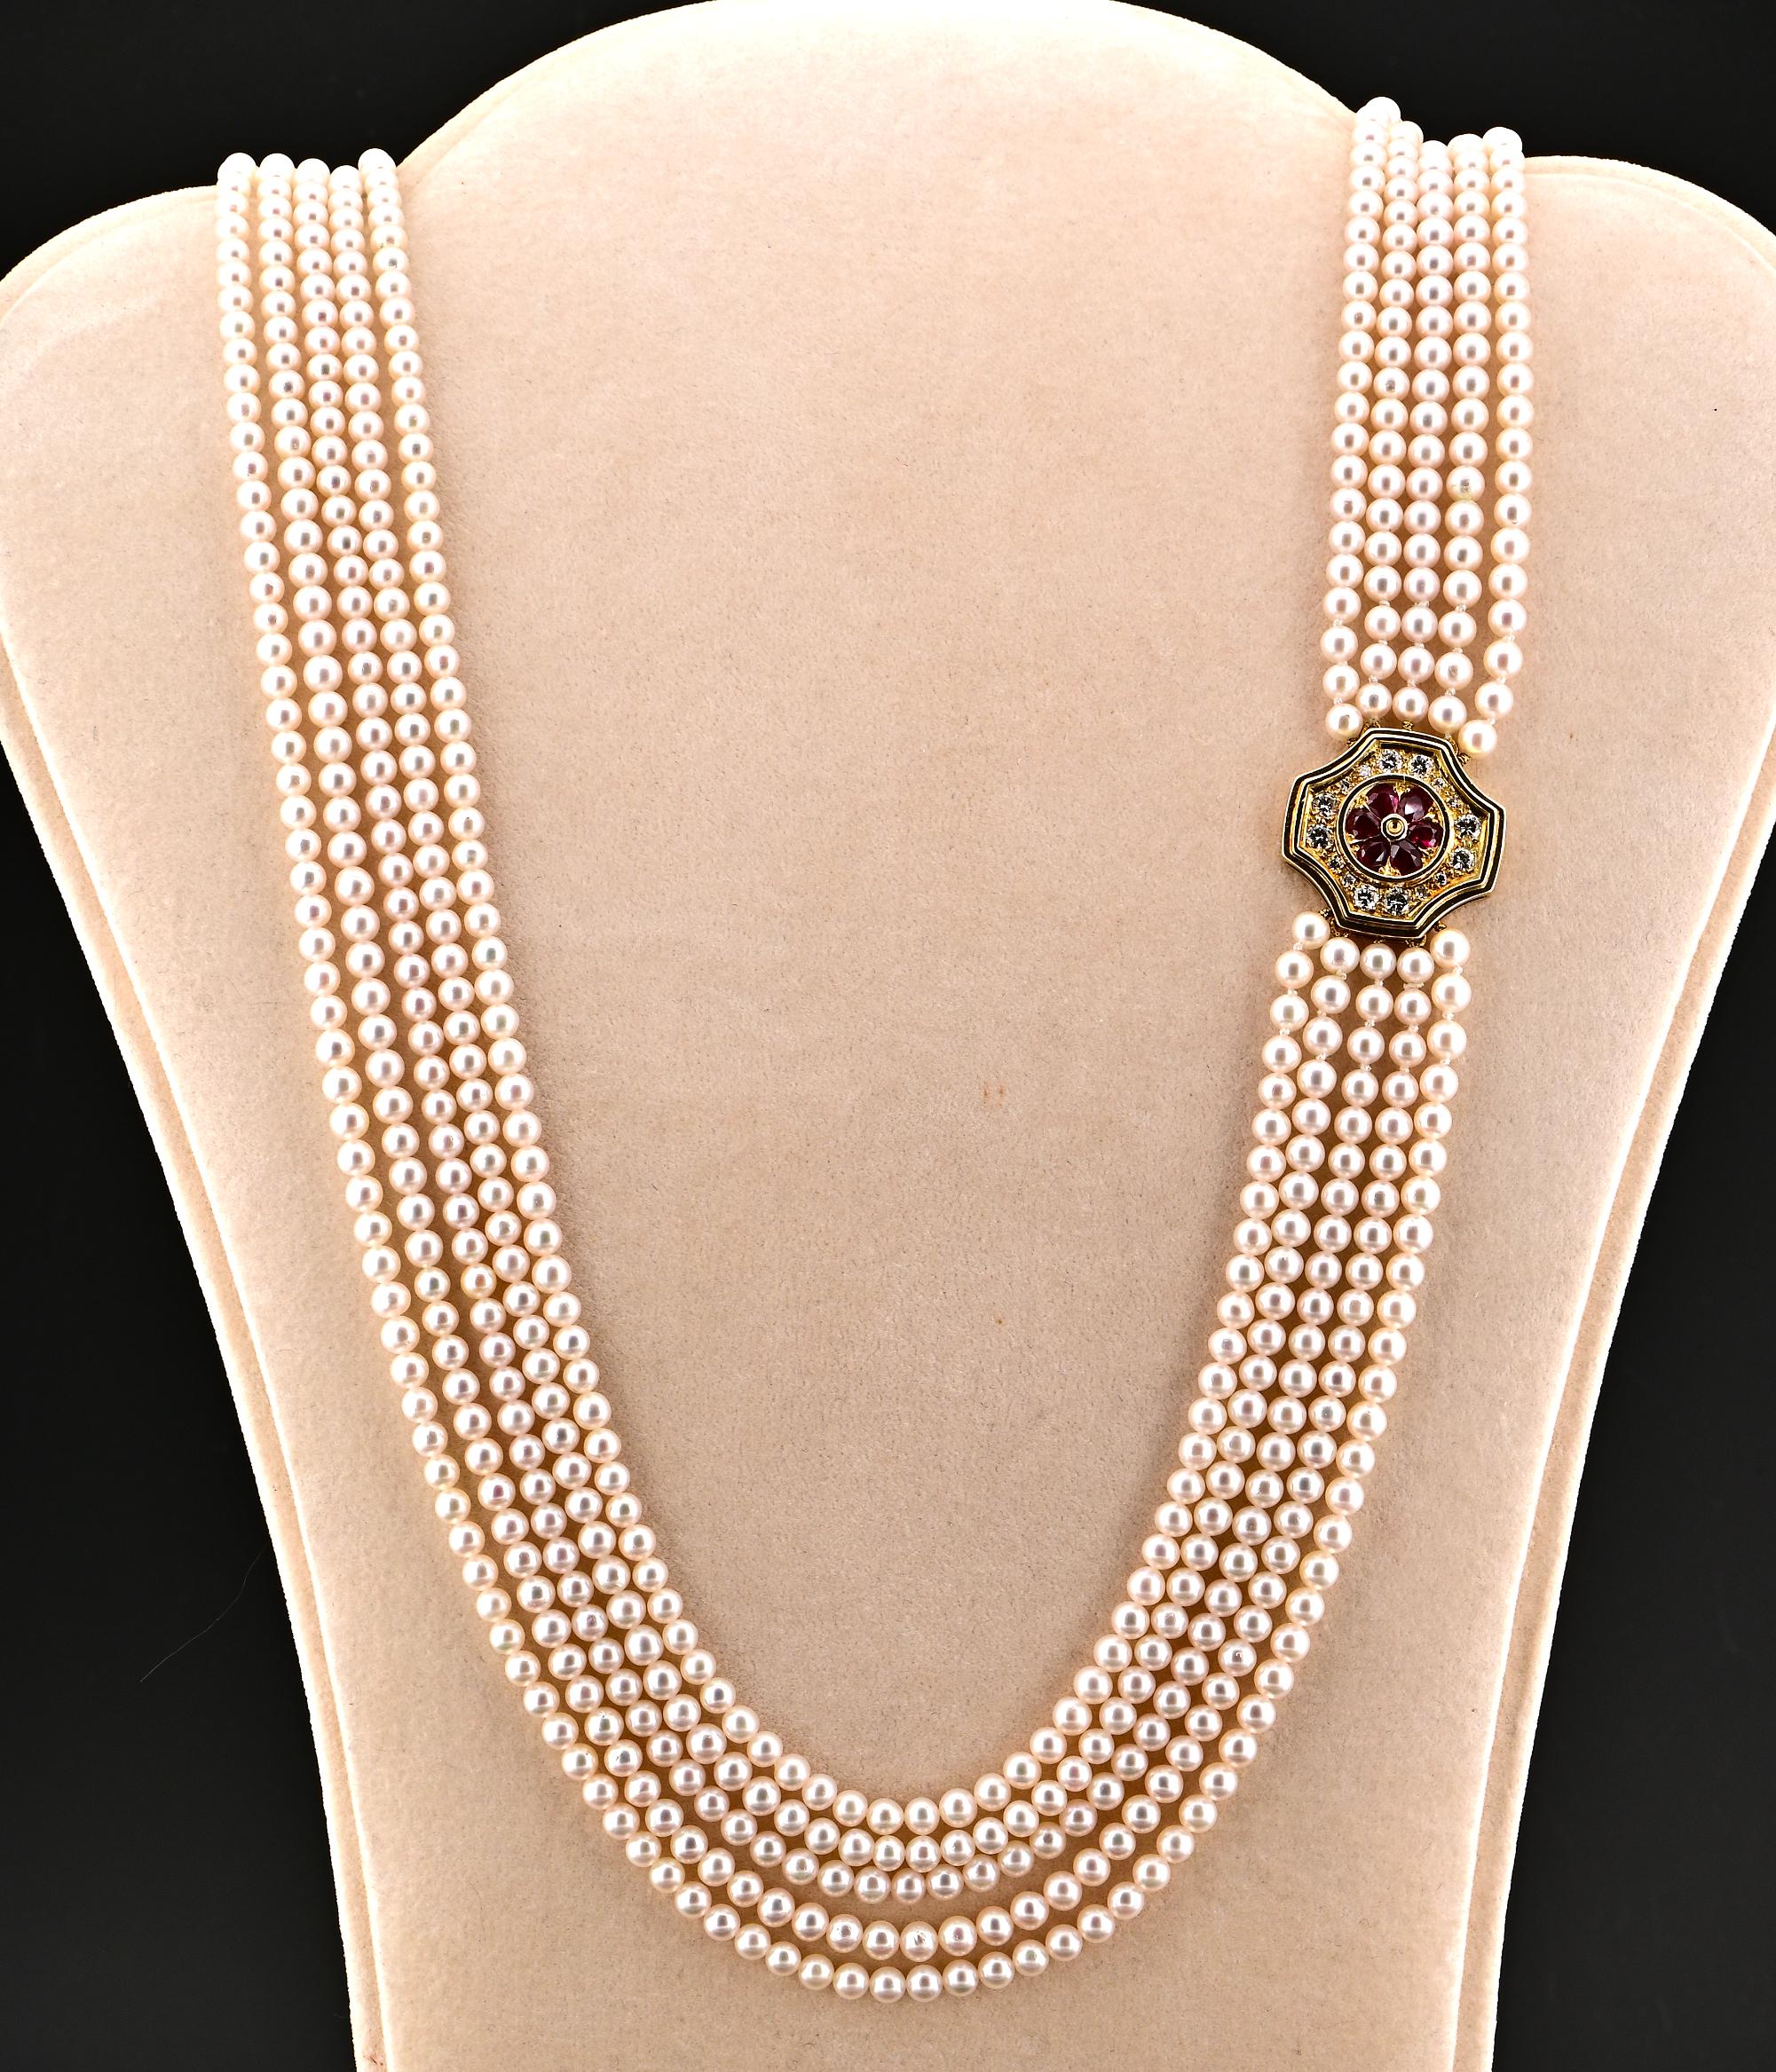 Eleganz im Rampenlicht
Dieser einzigartige Vintage-Anzug mit Perlen, Rubinen und Diamanten ist der Inbegriff zeitloser Eleganz. Die handgefertigten Teile aus 18-karätigem Gold tragen englische Punzen für London 1977.
Der Anzug besteht aus einer